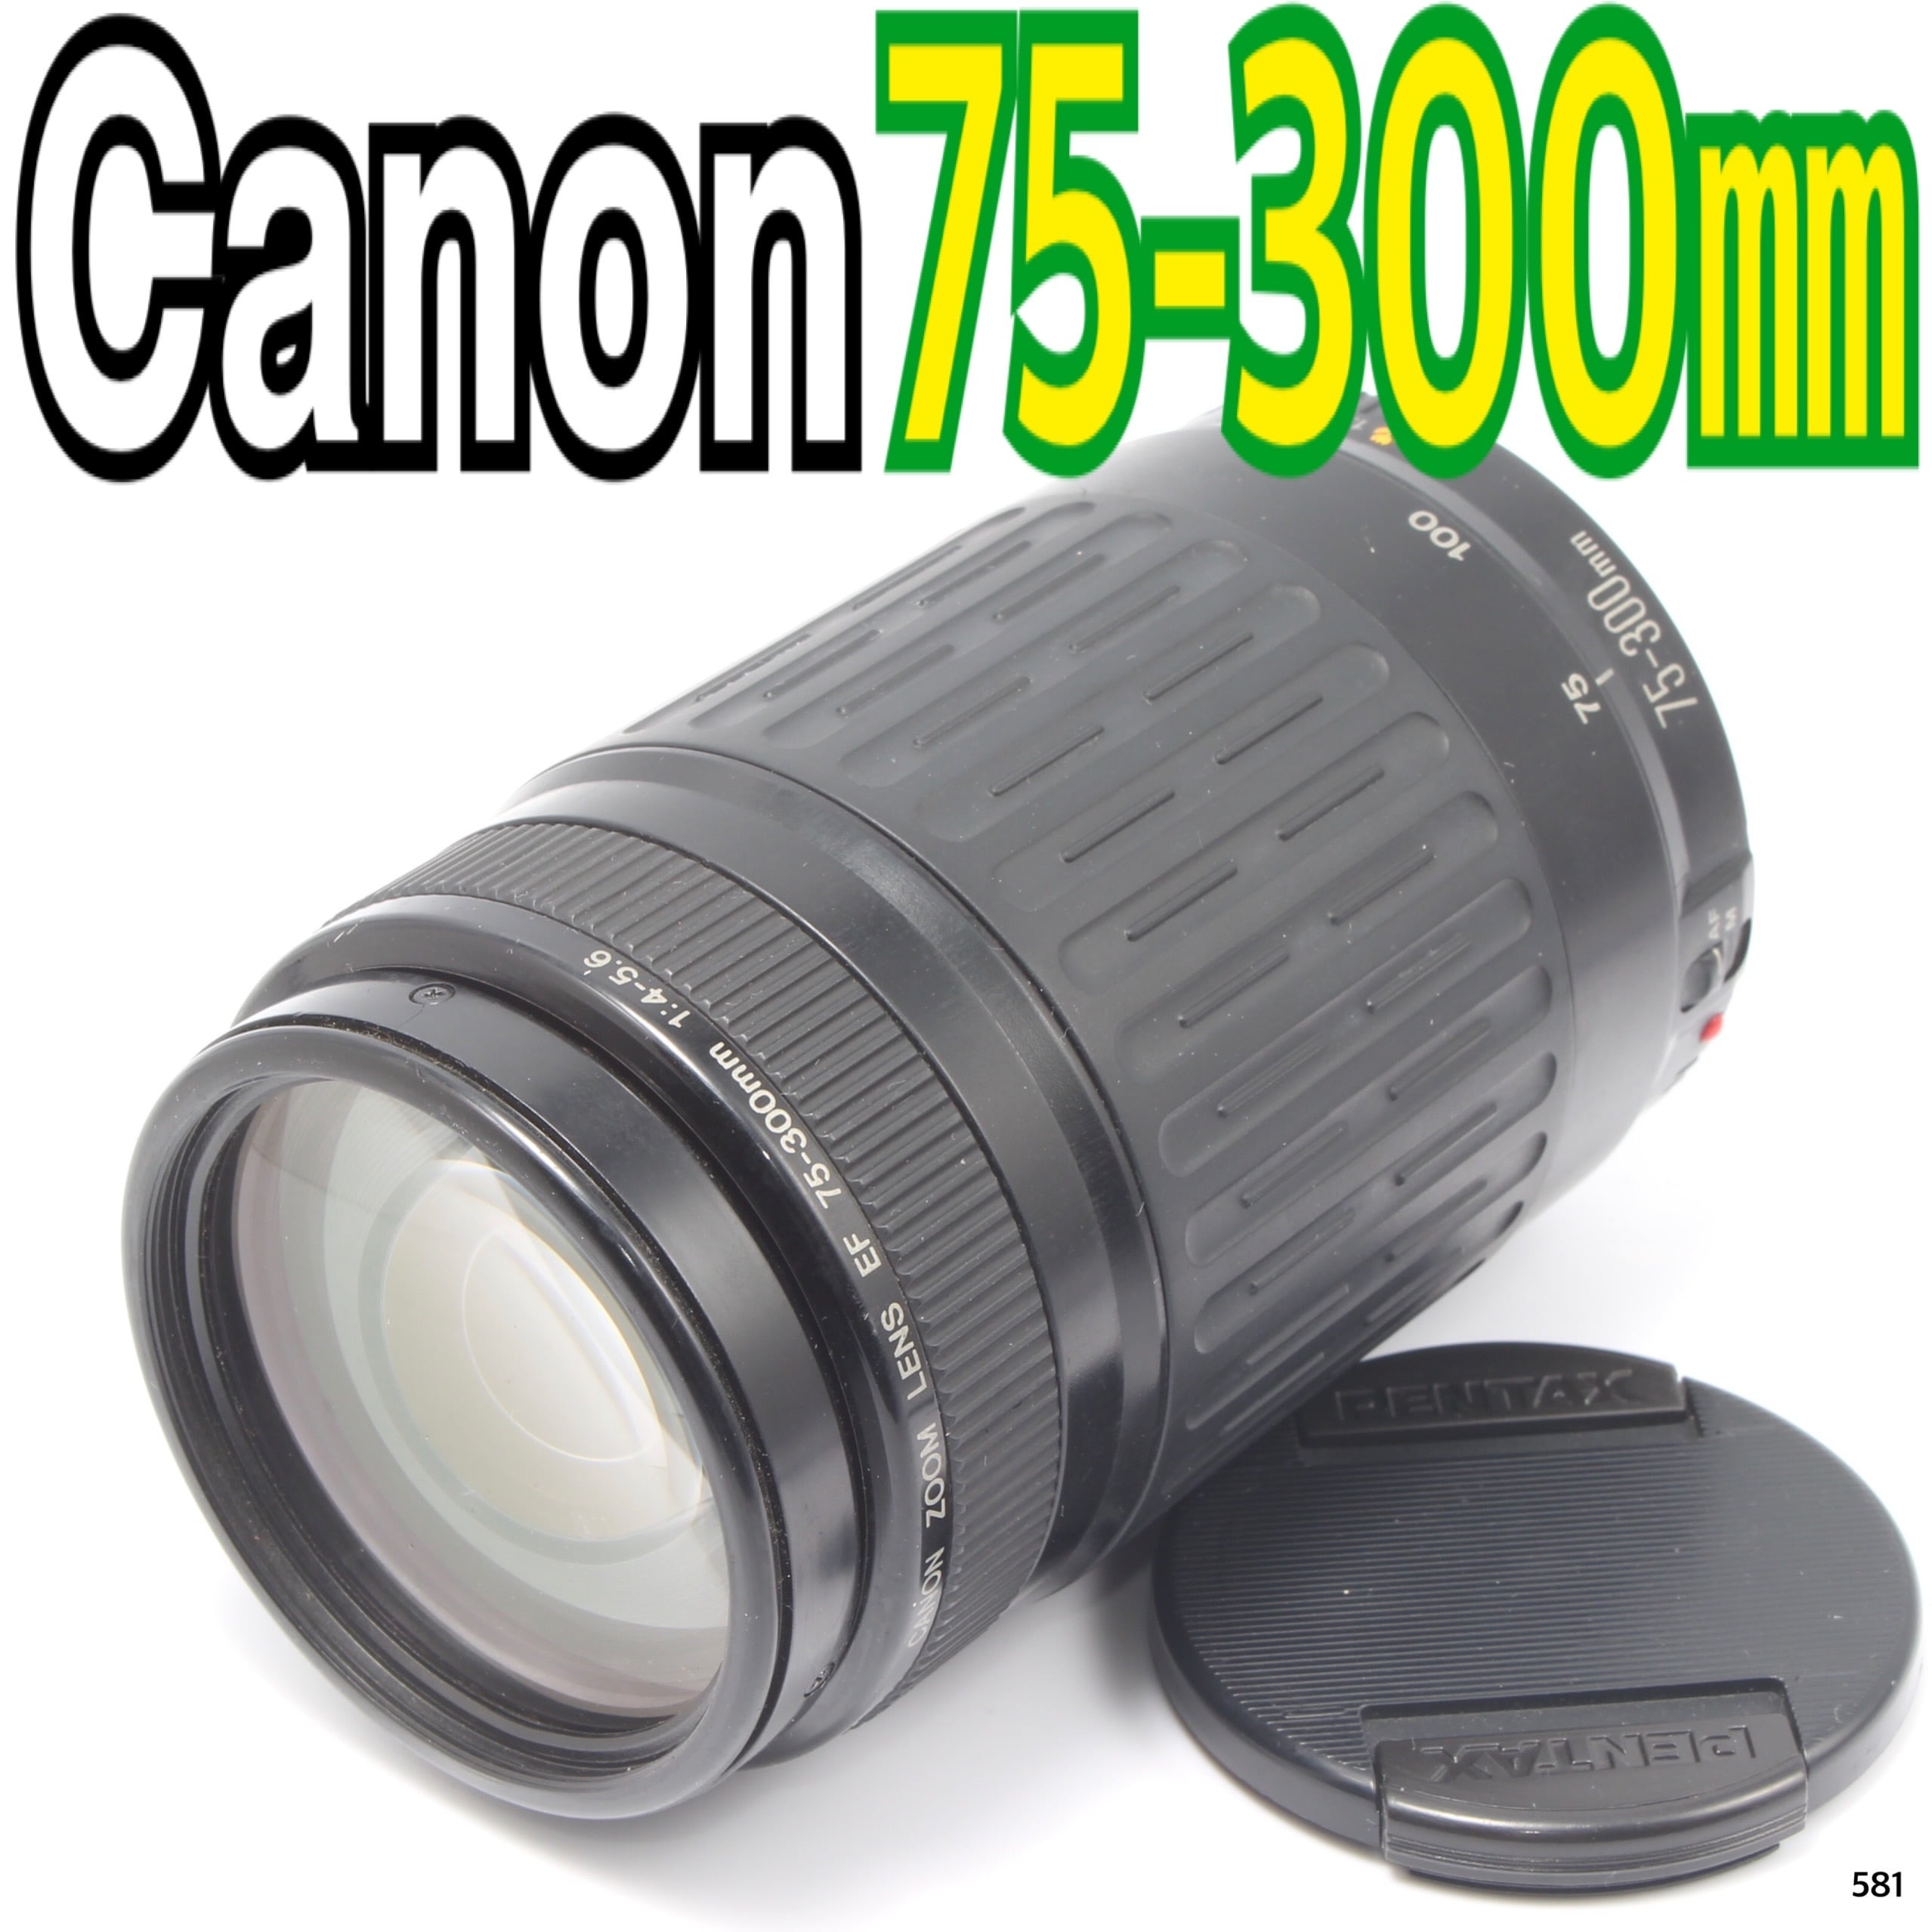 Canon キヤノン 望遠 レンズ 100-300mm Canon キャノン - レンズ(ズーム)